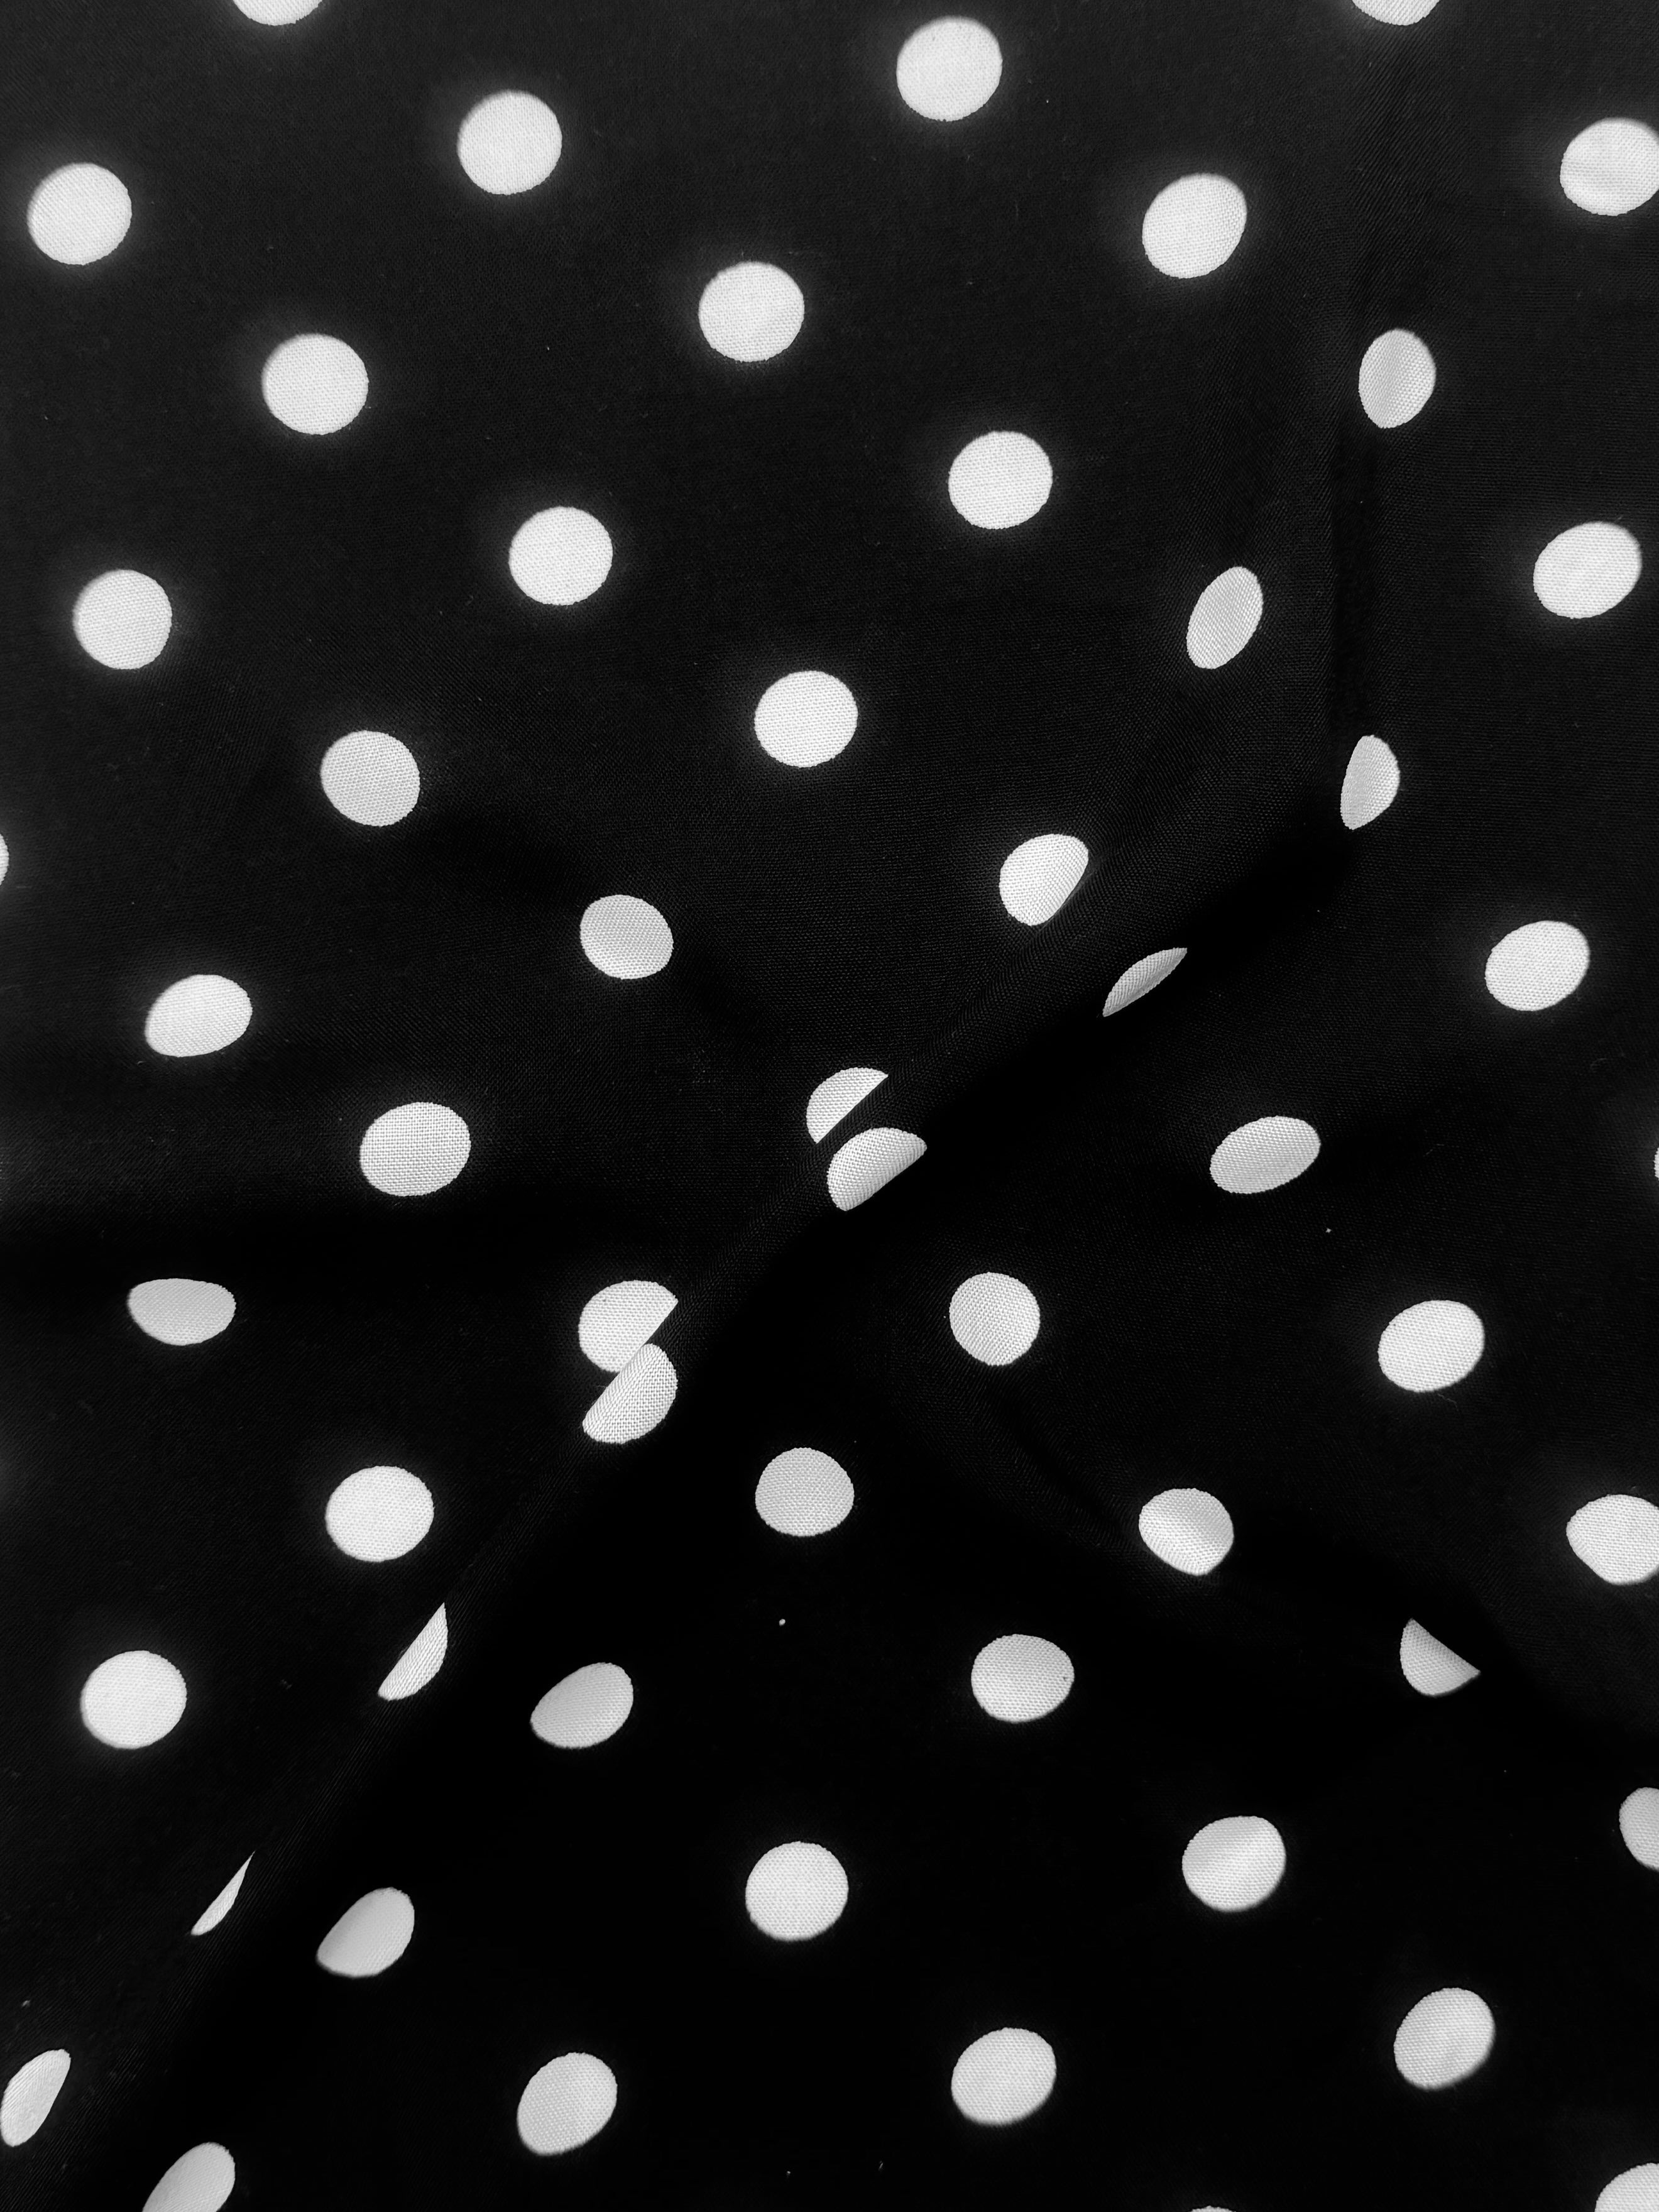 White polka dots on black rayon challis, Black Rayon Challis, Black and white Rayon Challis, eco-friendly fabric, pure Rayon Challis fabric, Rayon Challis, Rayon Challis fabric, kiki textiles, sewing